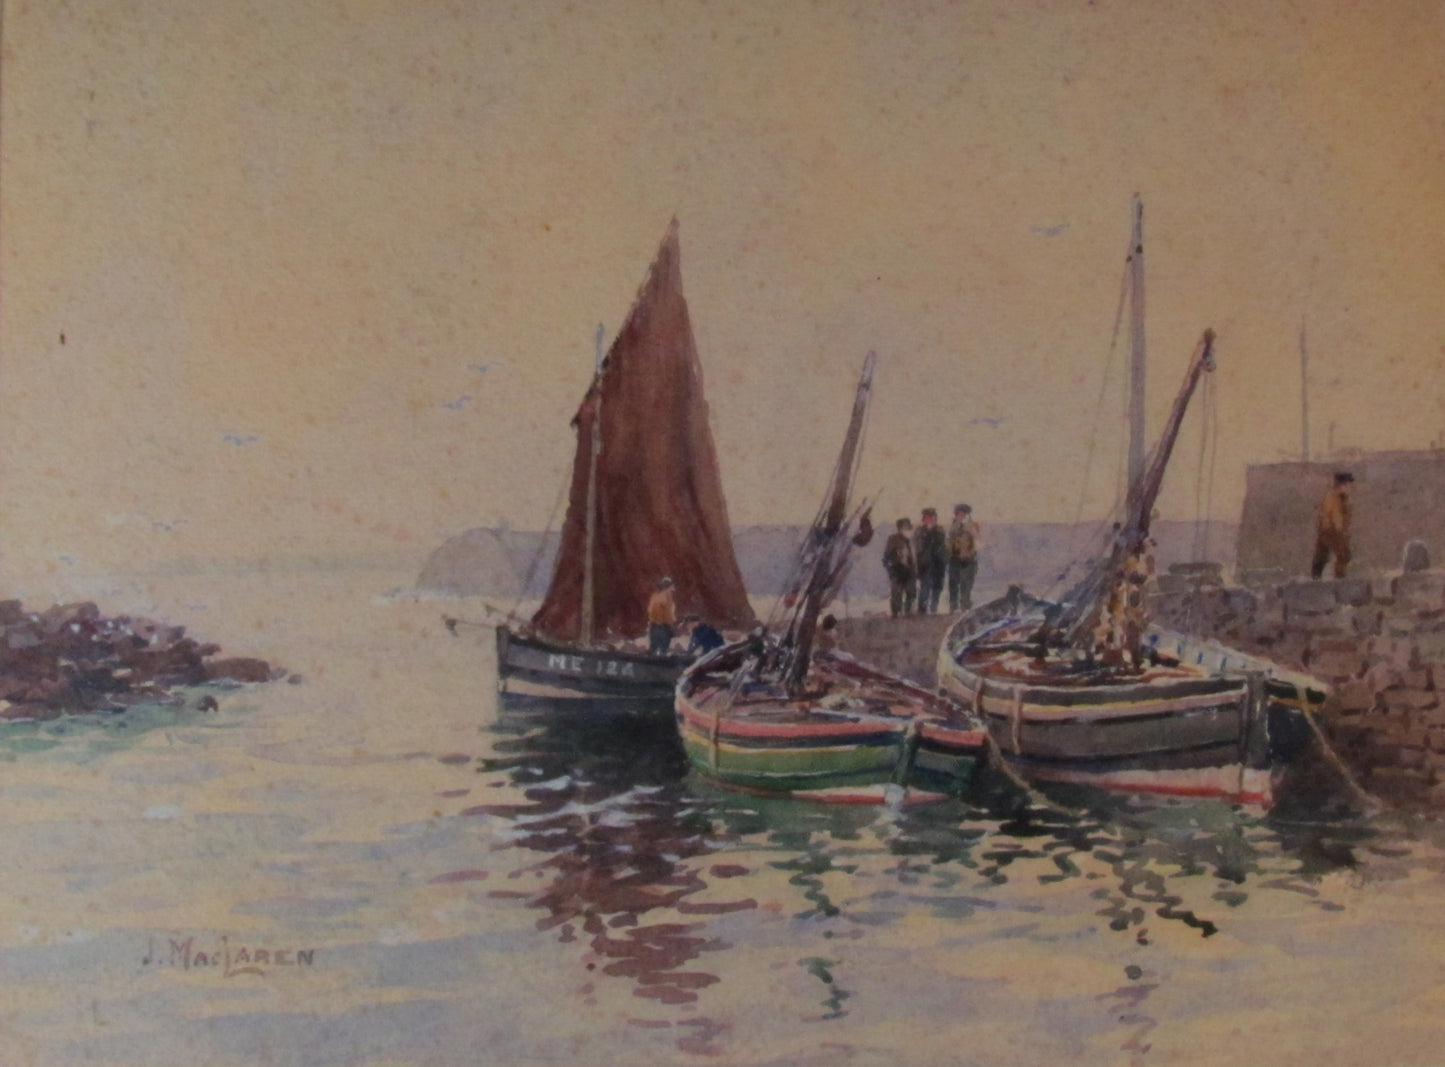 James MacLaren Watercolour Fishing Boats 1